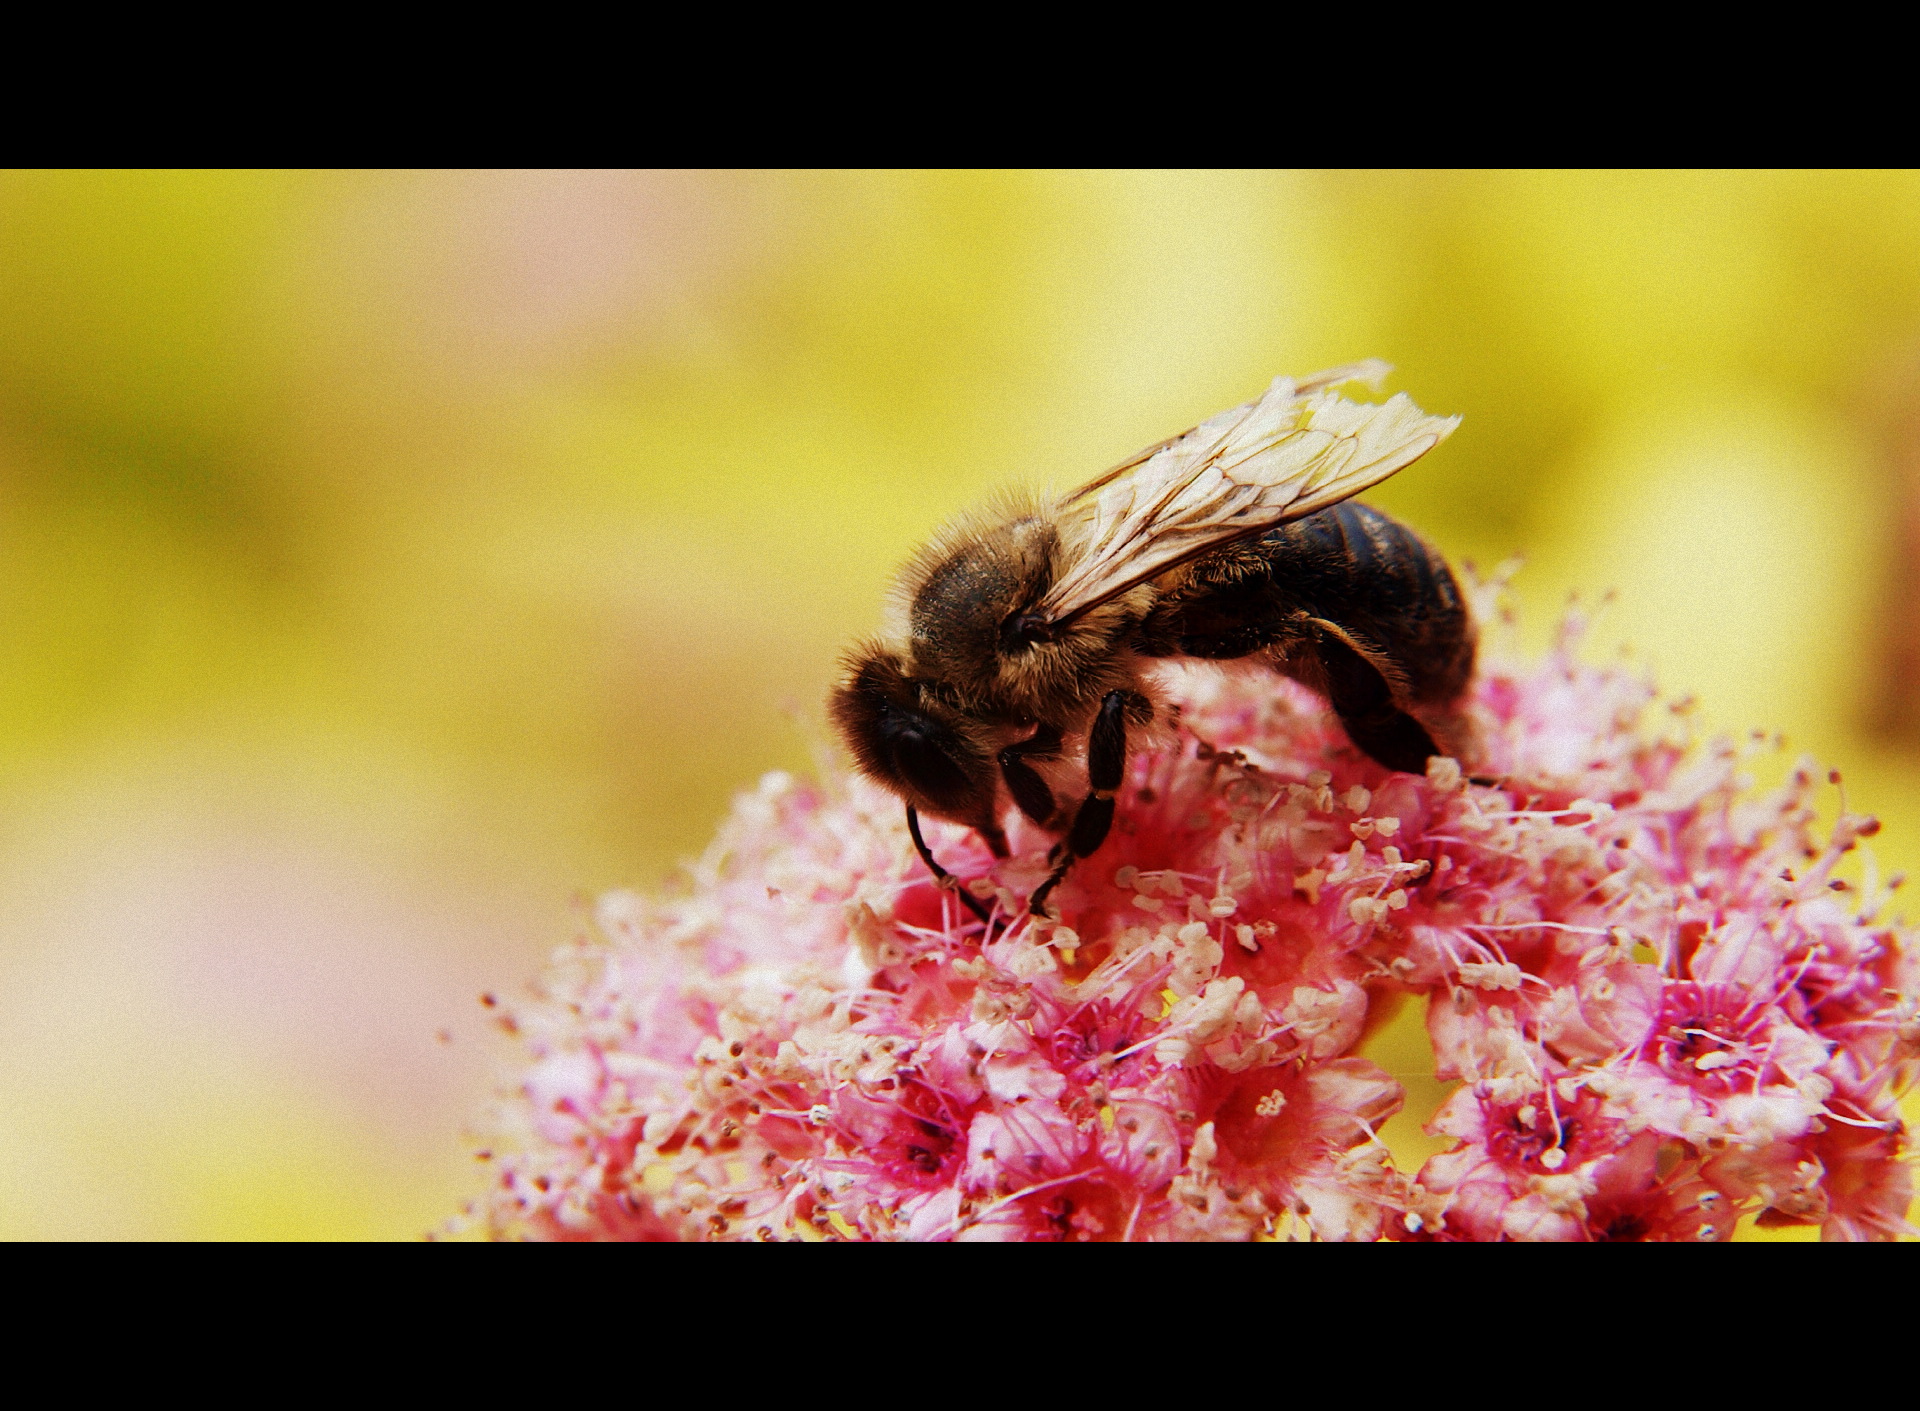 Descarga gratuita de fondo de pantalla para móvil de Abeja, Insecto, Insectos, Naturaleza, Flor, Animales.